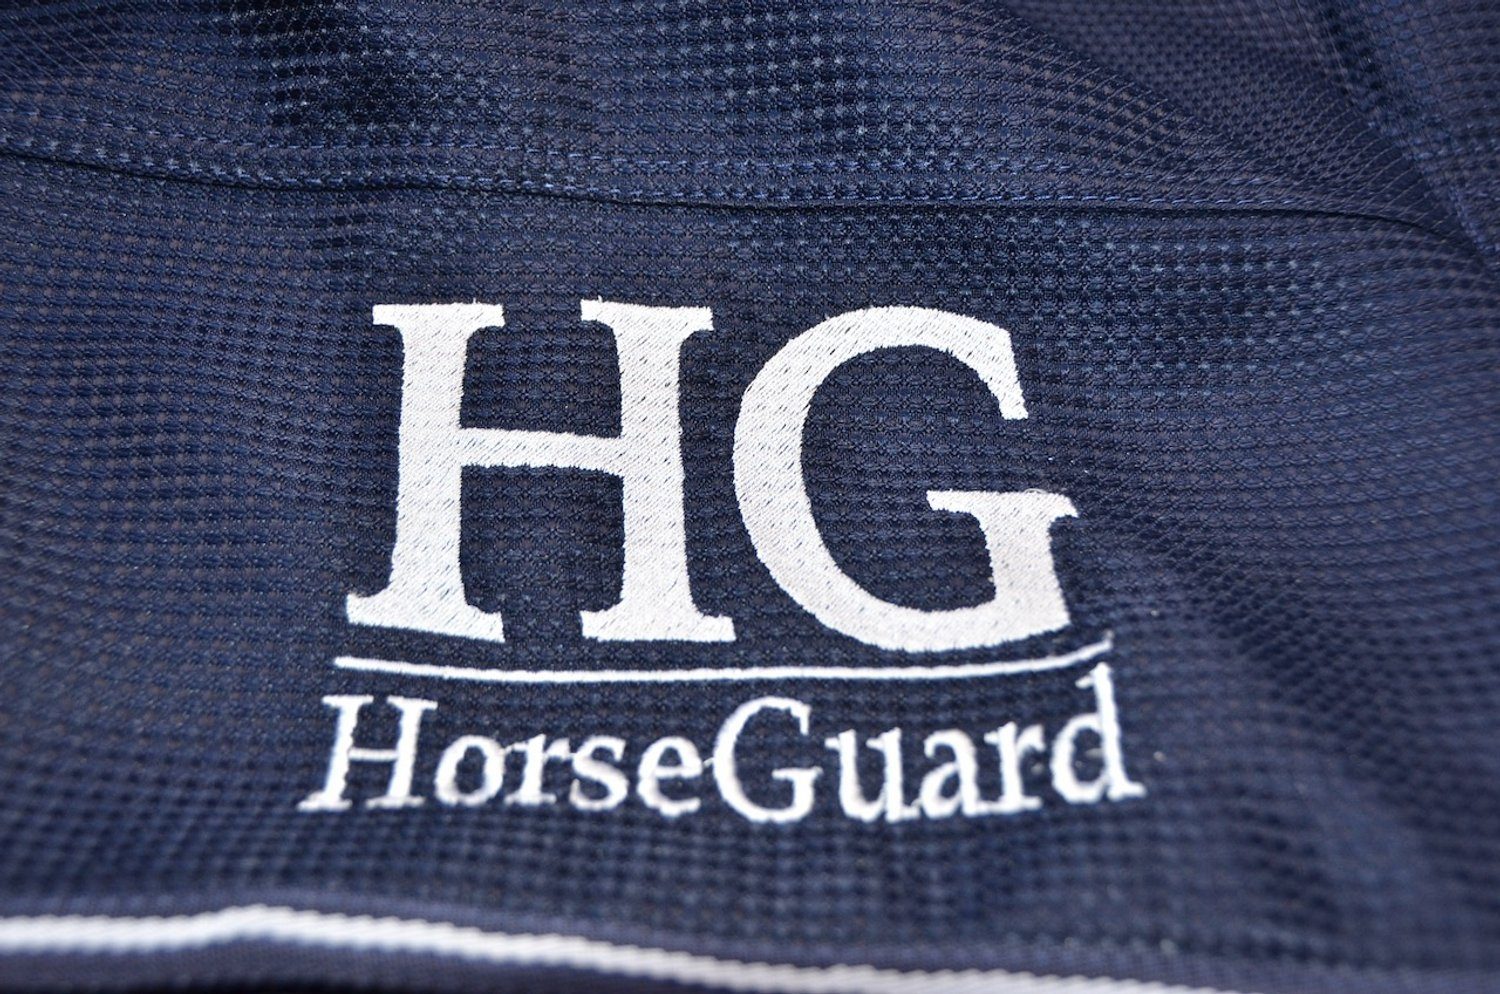 leichte Guard Insekt Weidedecke Transport Rug Pferde-Nierendecke Horse Horse Sommer Pferdedecke Guard